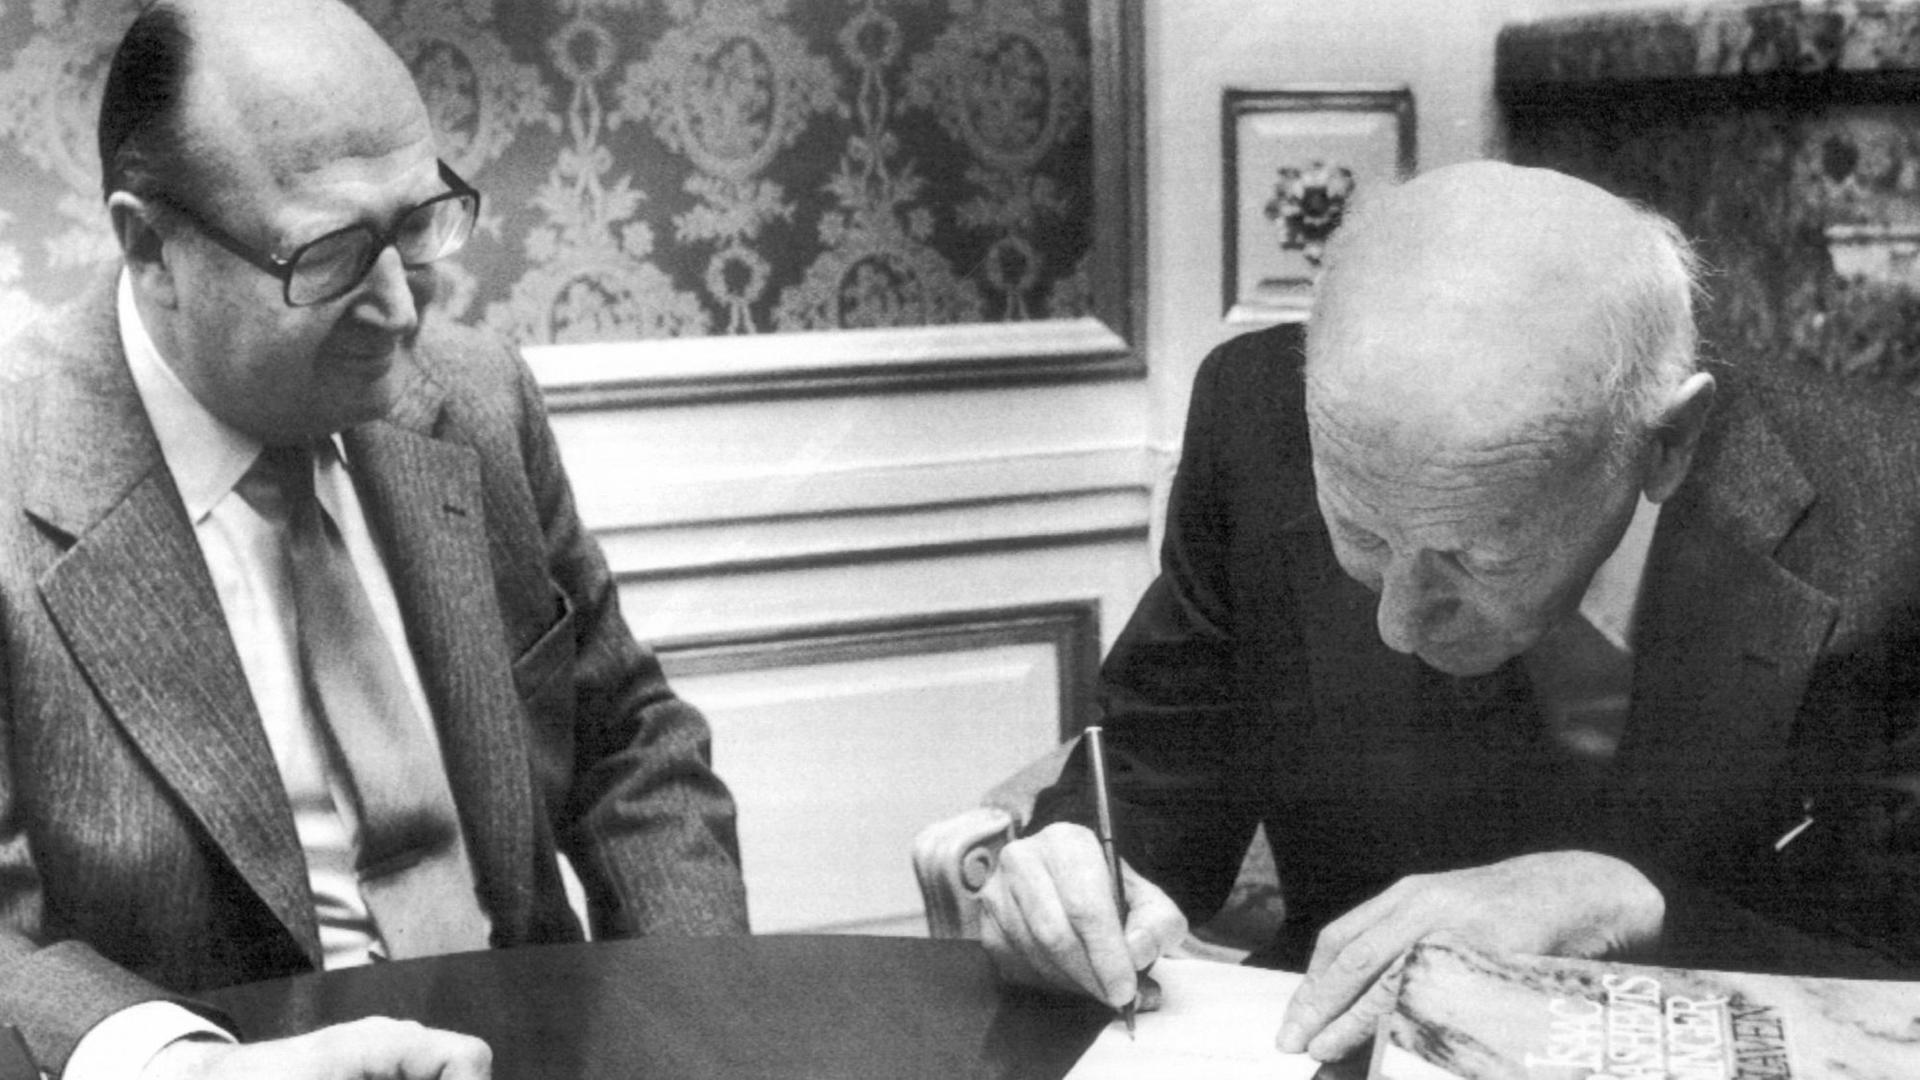 Der Vizevorsitzende der schwedischen Bank (Svenska Handelsbanken), Tore Browald (l), beobachtet den Literatur-Nobelpreisträger Isaac Bashevis Singer (r, "Mein Vater der Rabbi") beim Unterschreiben des Nobelpreis-Schecks am 11. Dezember 1978 in Stockholm.